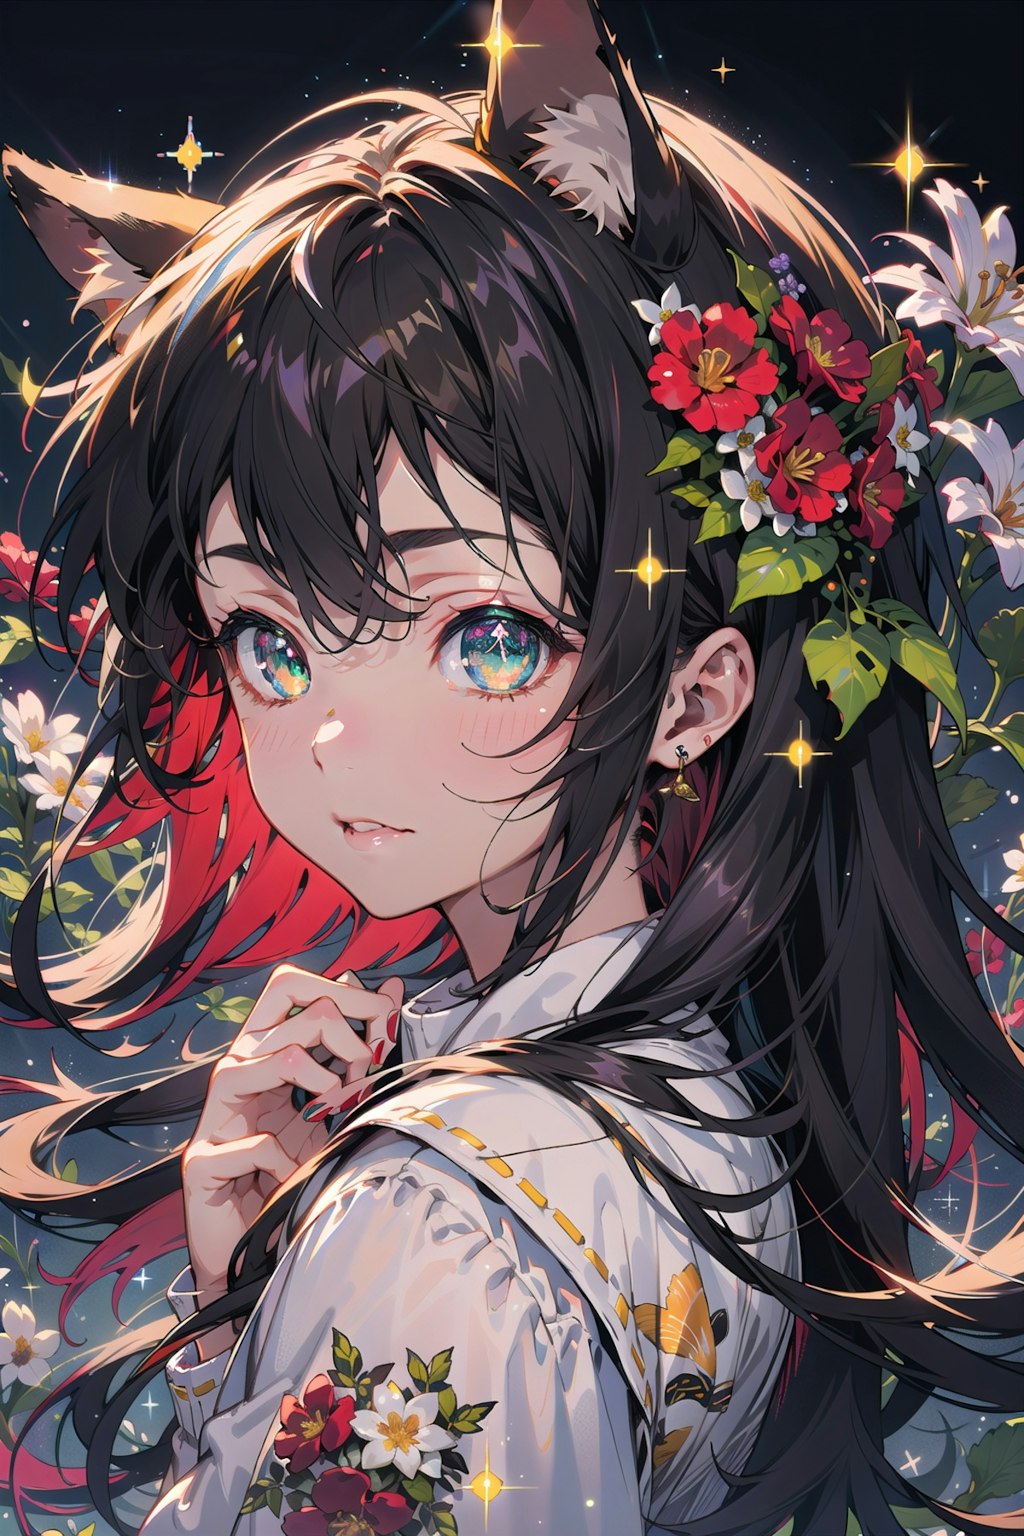 Black Floral Background